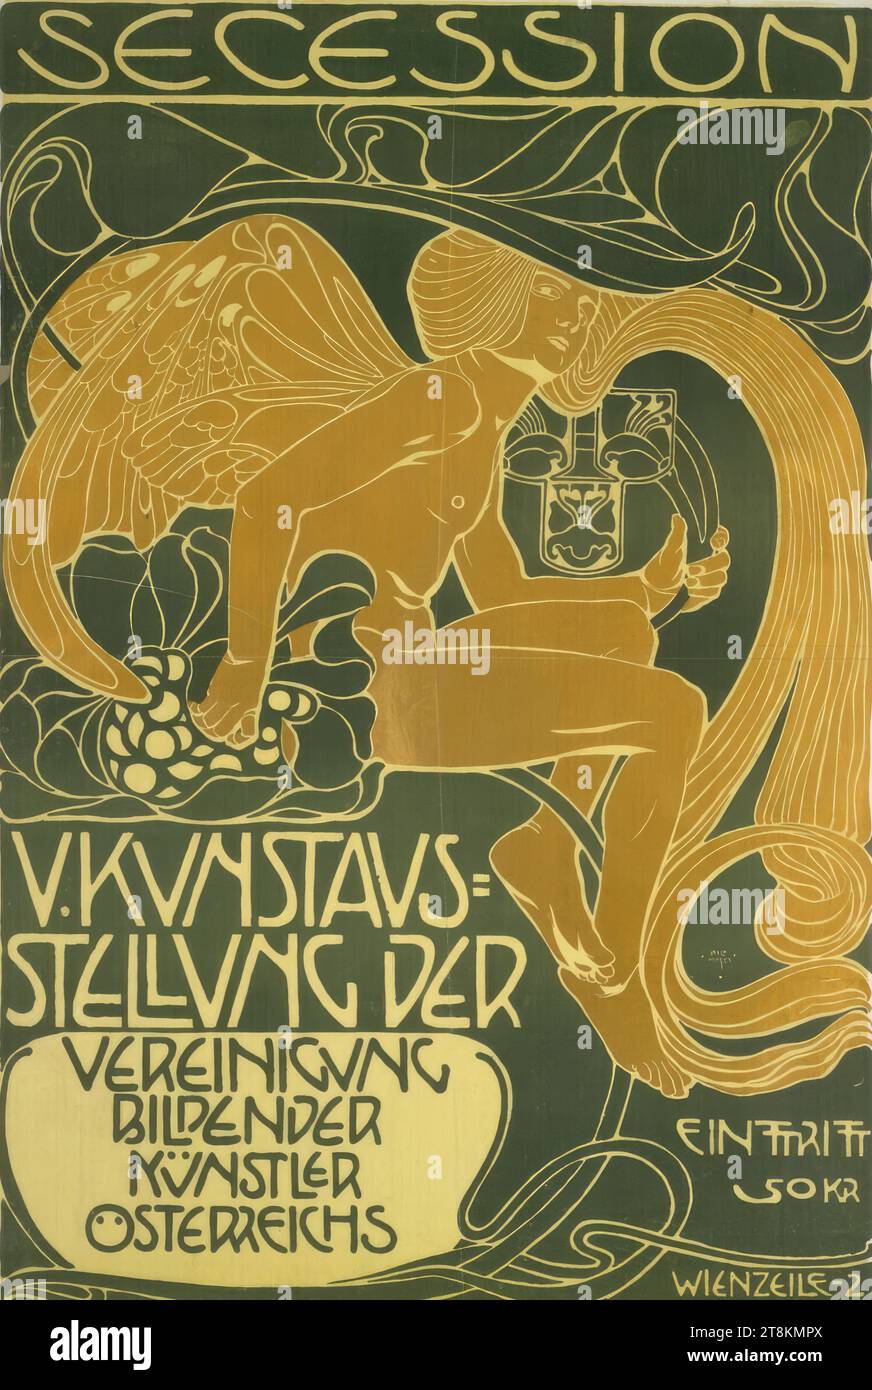 SECESSIONE; V. MOSTRA D'ARTE, Koloman Moser, Vienna 1868 - 1918 Vienna, 1899, stampa, litografia a colori, foglio: 99,5 x 70 cm, Austria Foto Stock